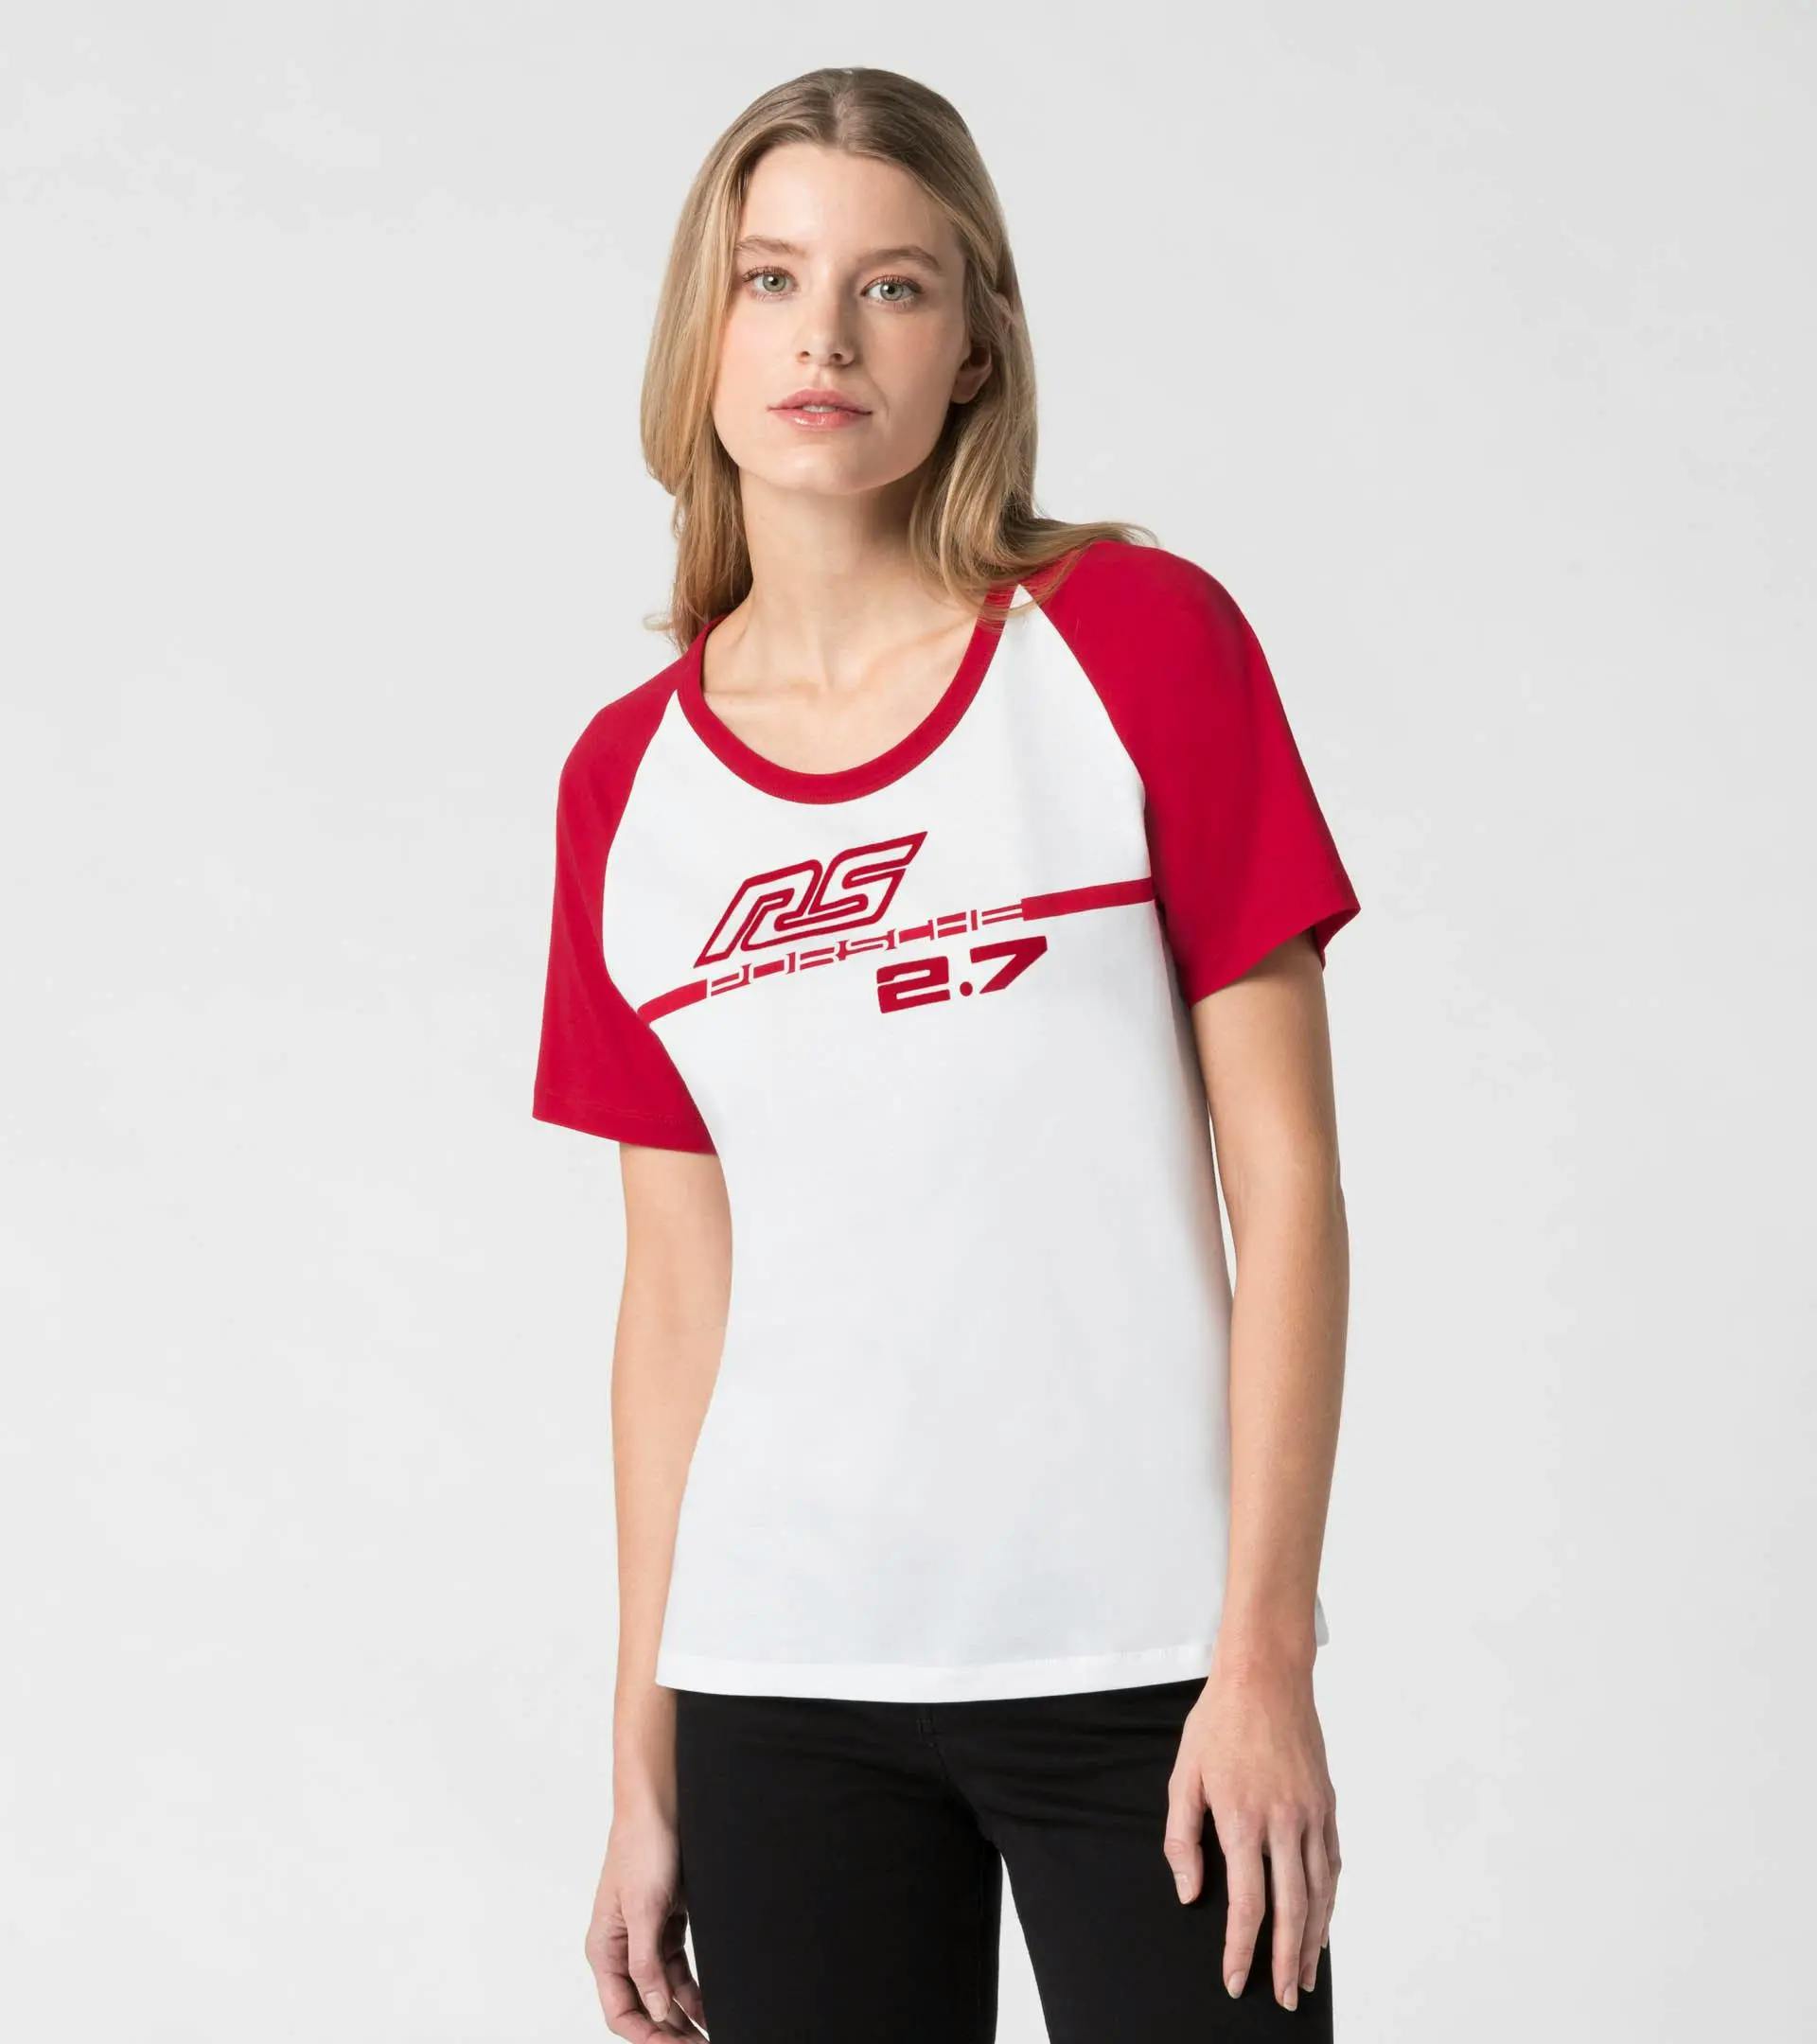 T-Shirt Damen – RS 2.7 5